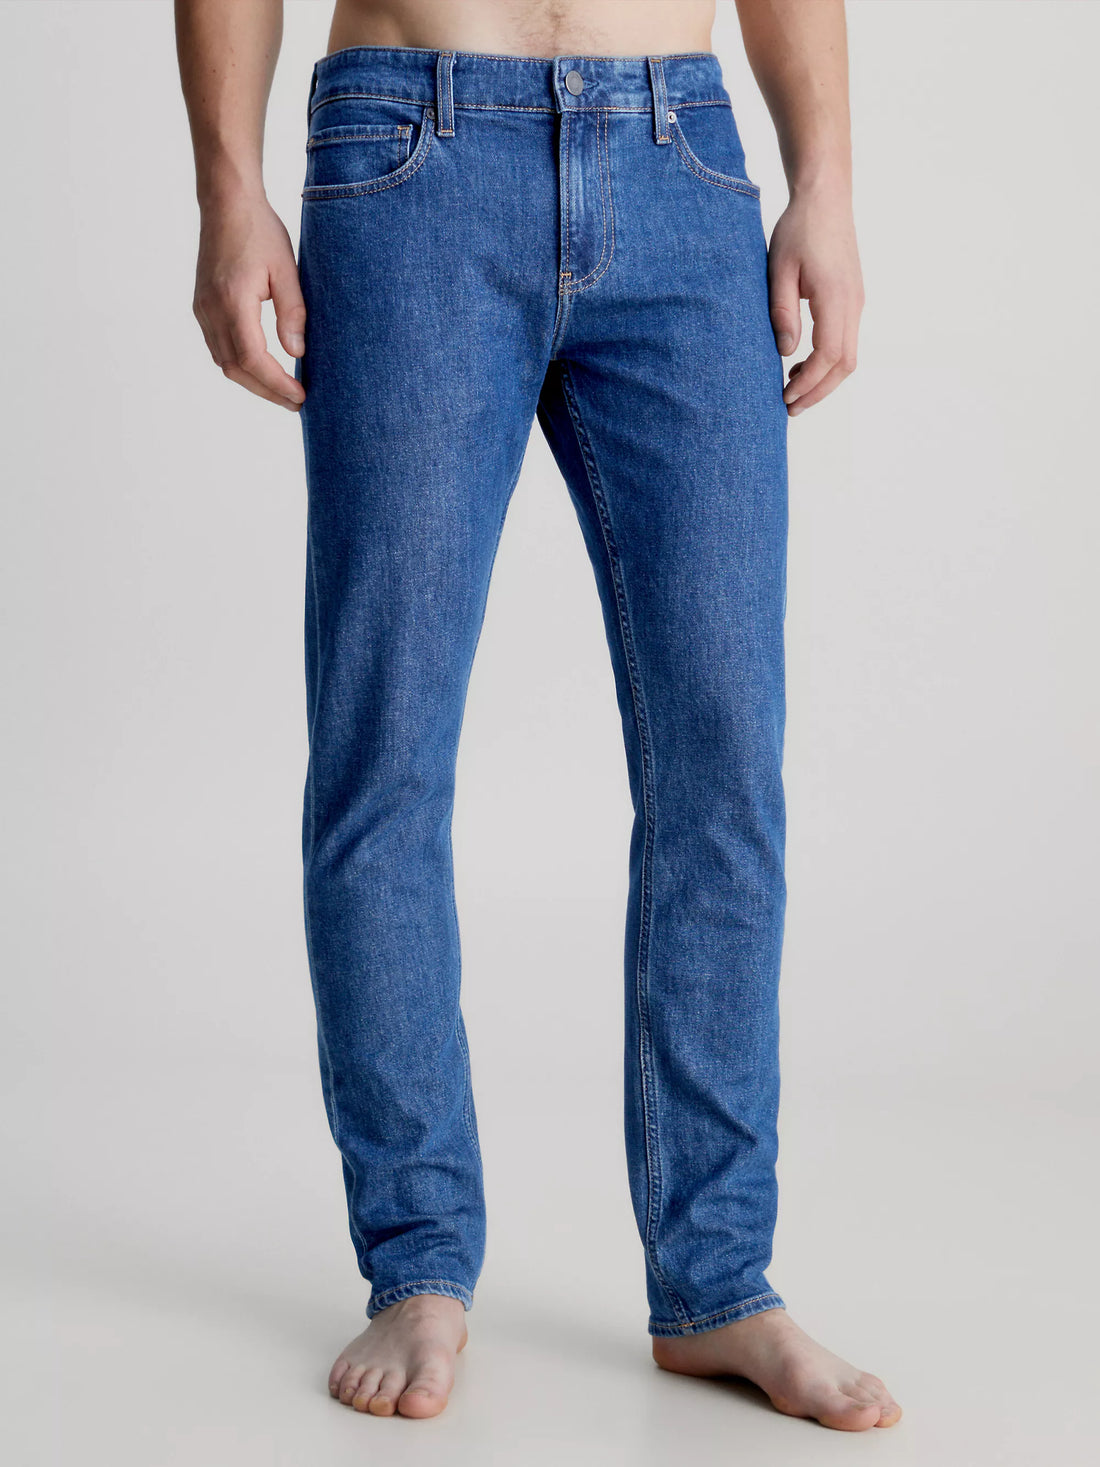 Jeans Slim - Calvin Klien Menswear